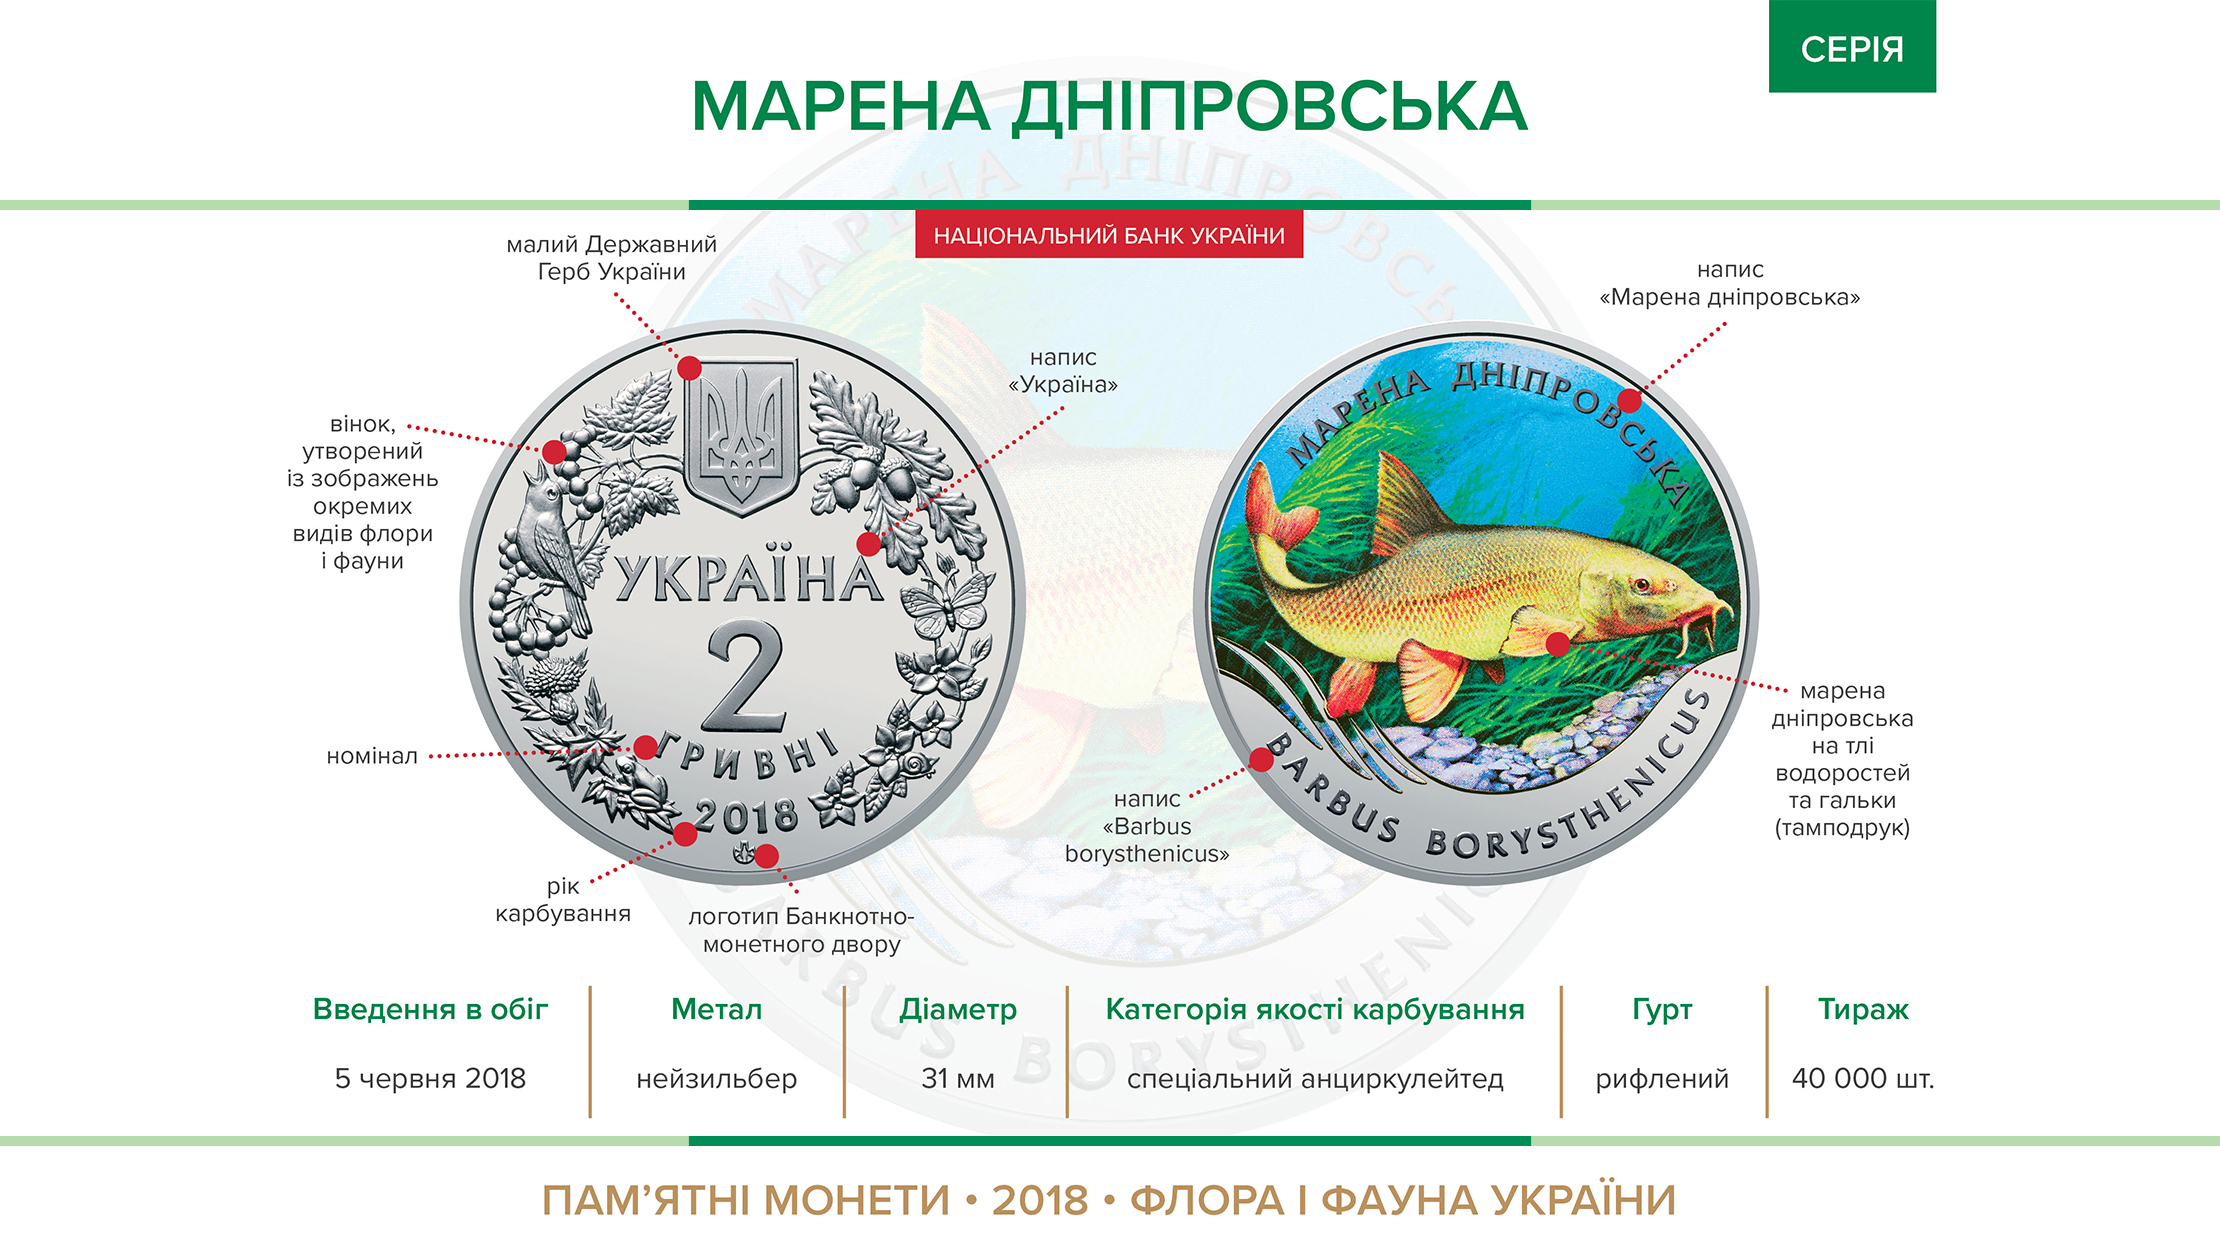 Пам'ятна монета "Марена дніпровська" (нейзильбер) вводиться в обіг з 05 червня 2018 року